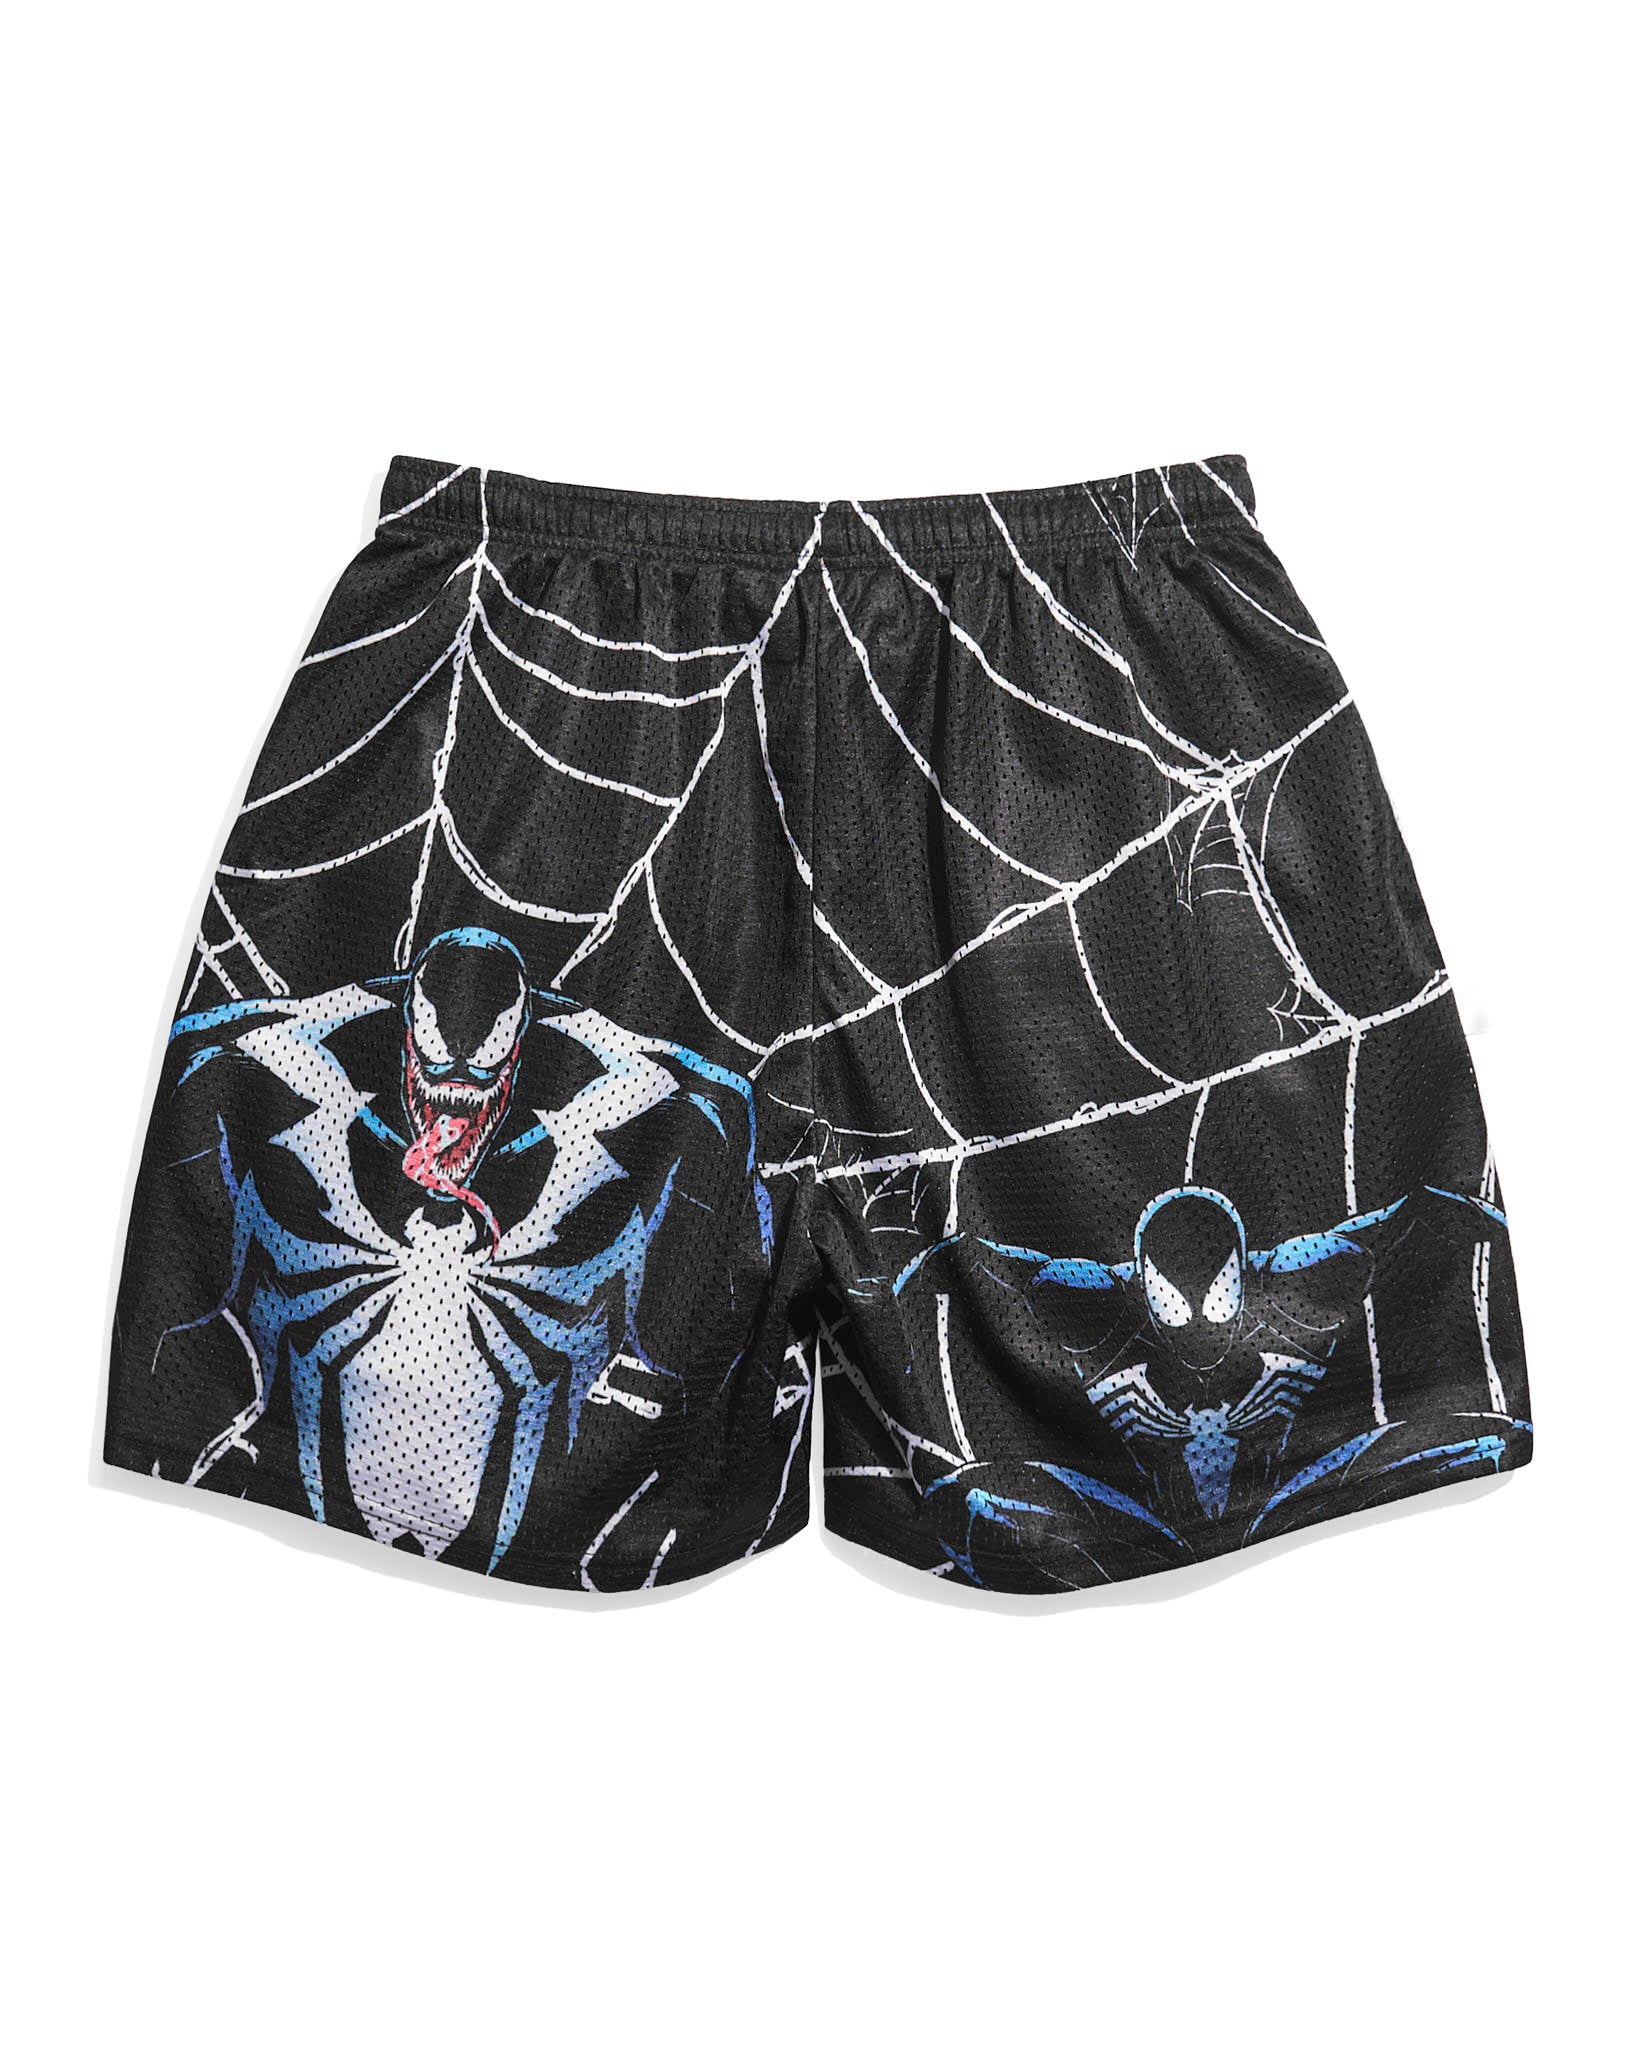 Spider-Man 2 Venom Web Retro Shorts